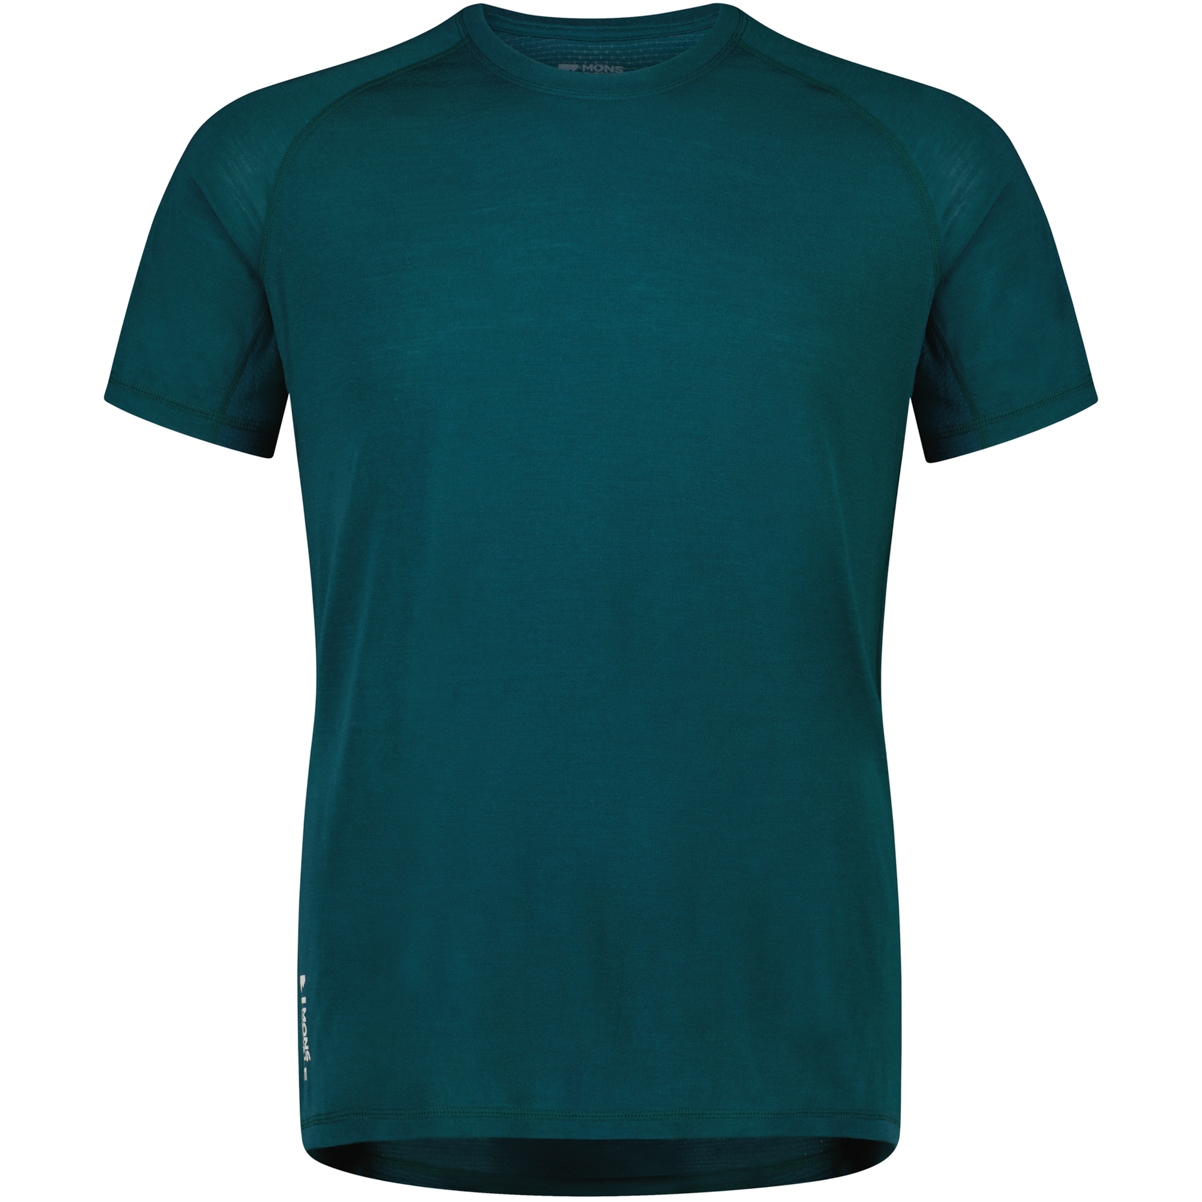 Produktbild von Mons Royale Temple Tech T-Shirt Herren - evergreen